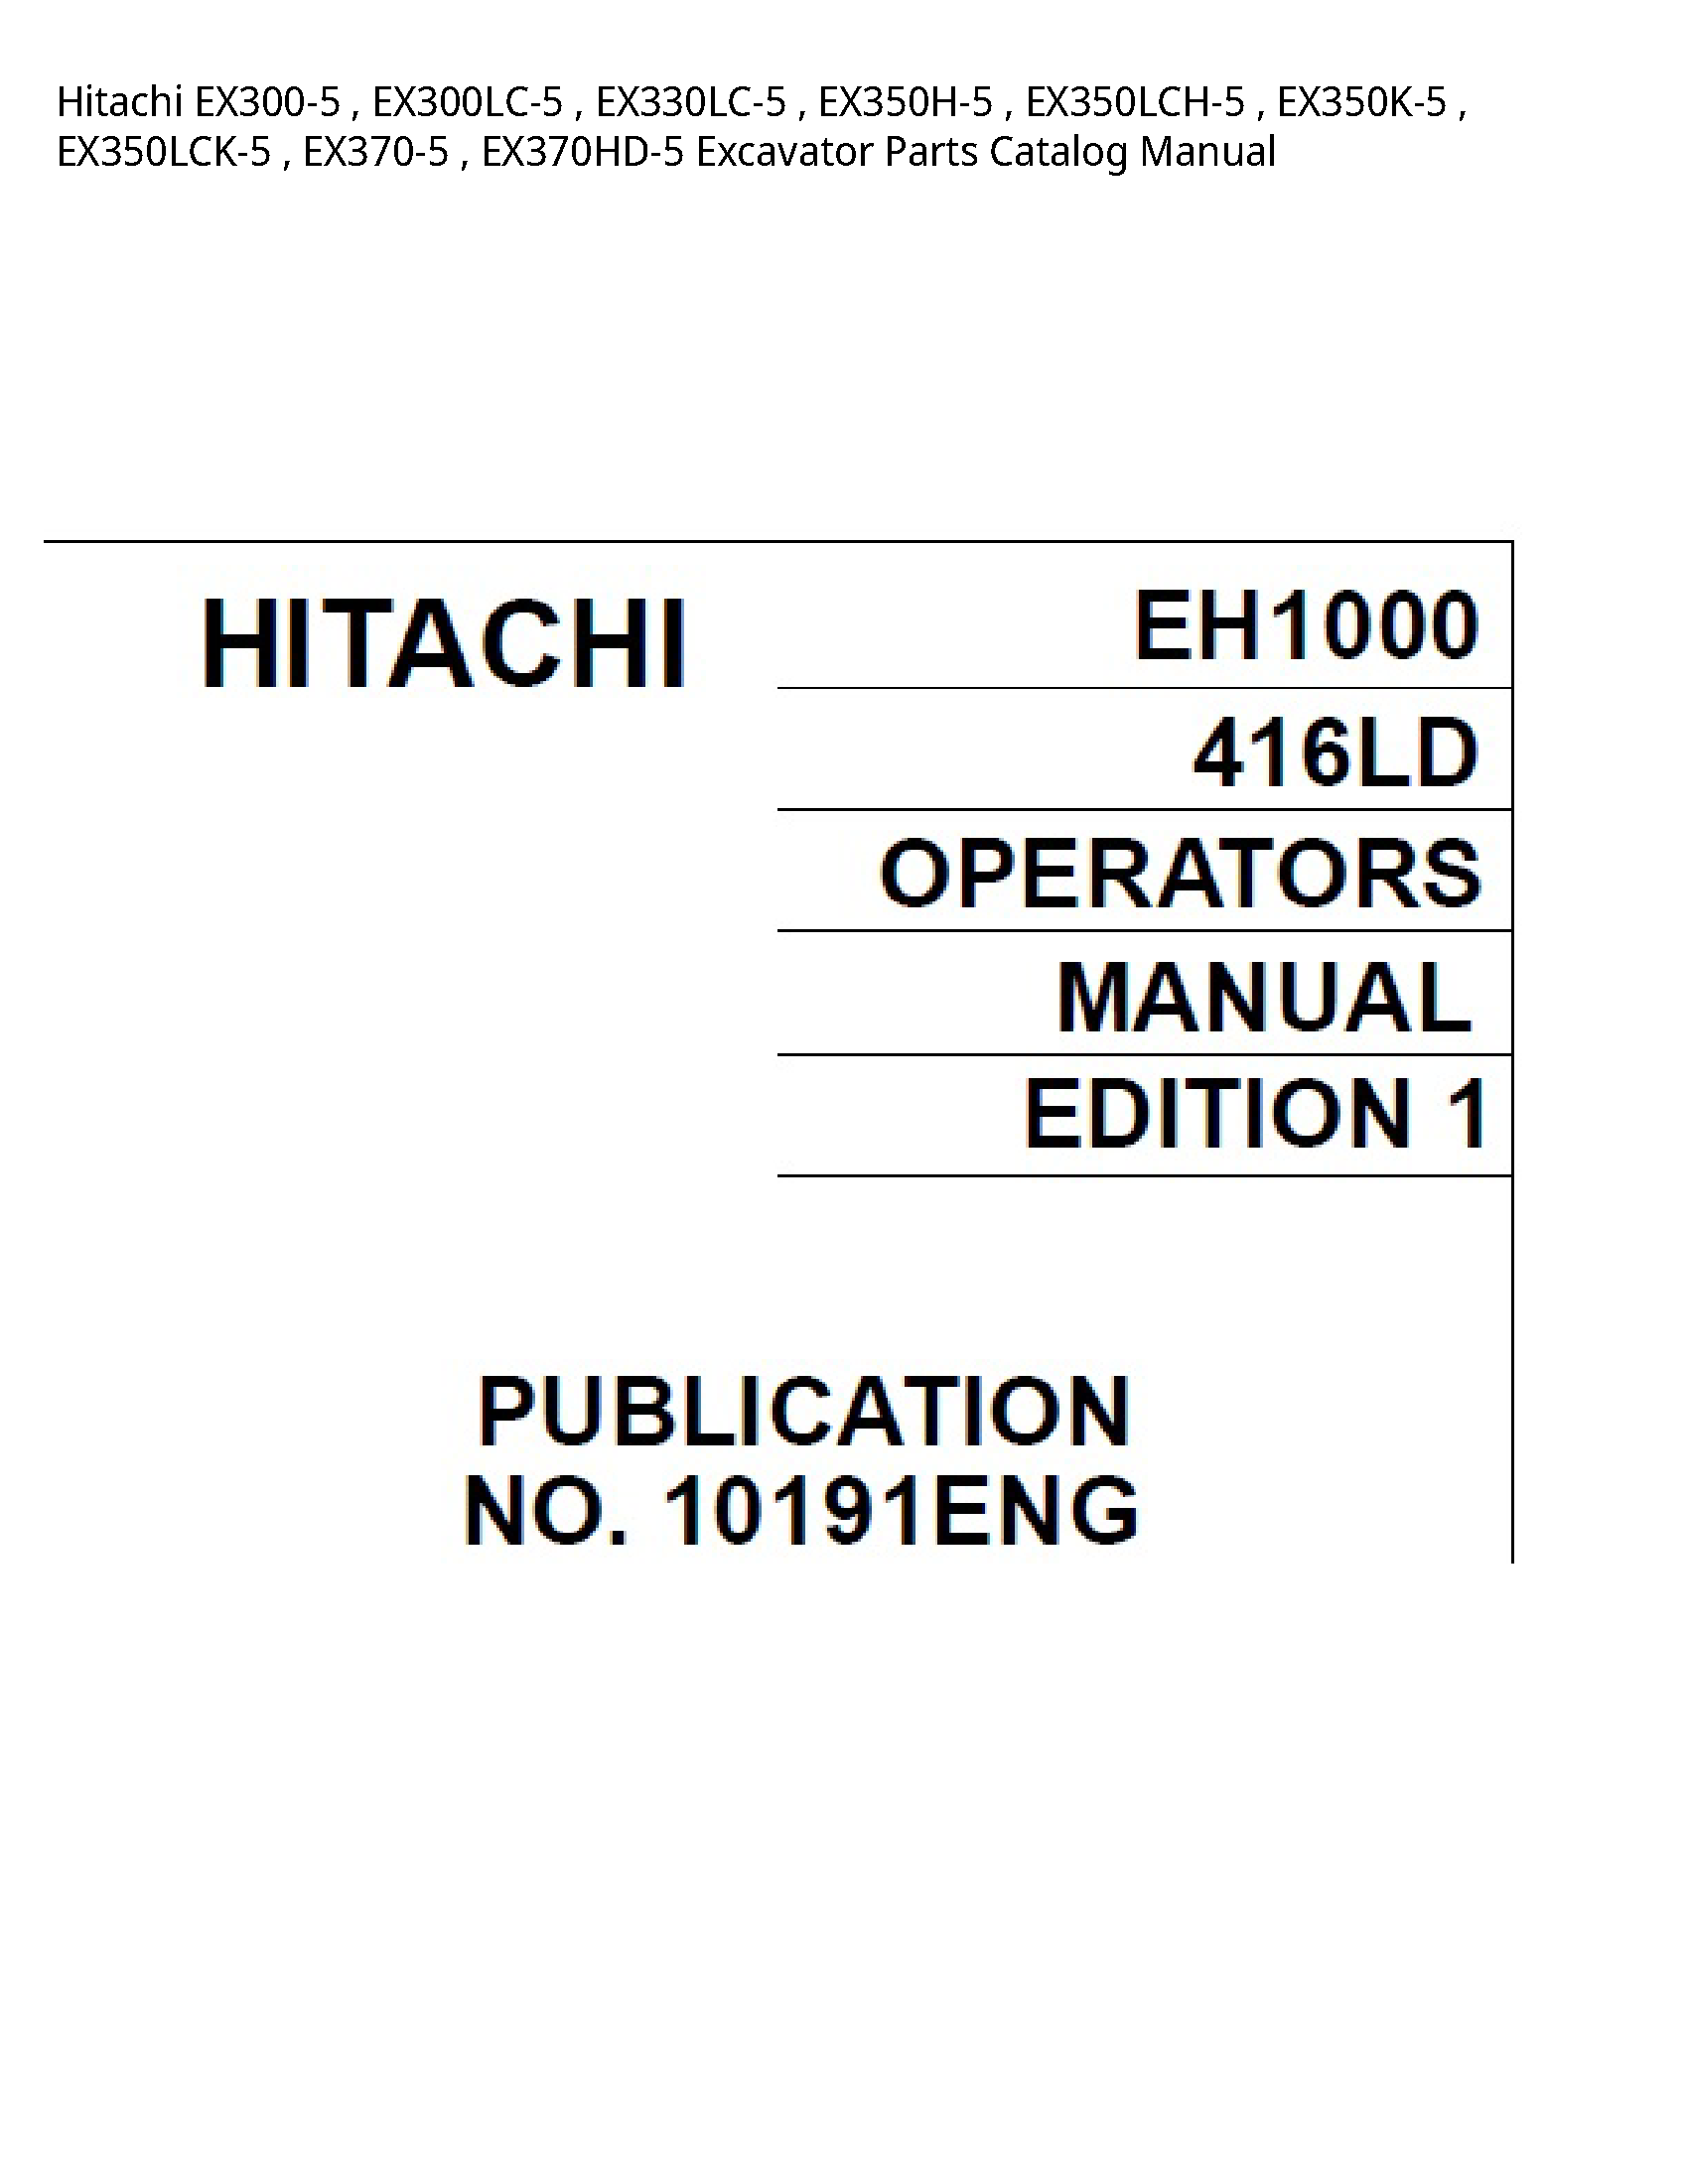 Hitachi EX300-5 Excavator Parts Catalog manual